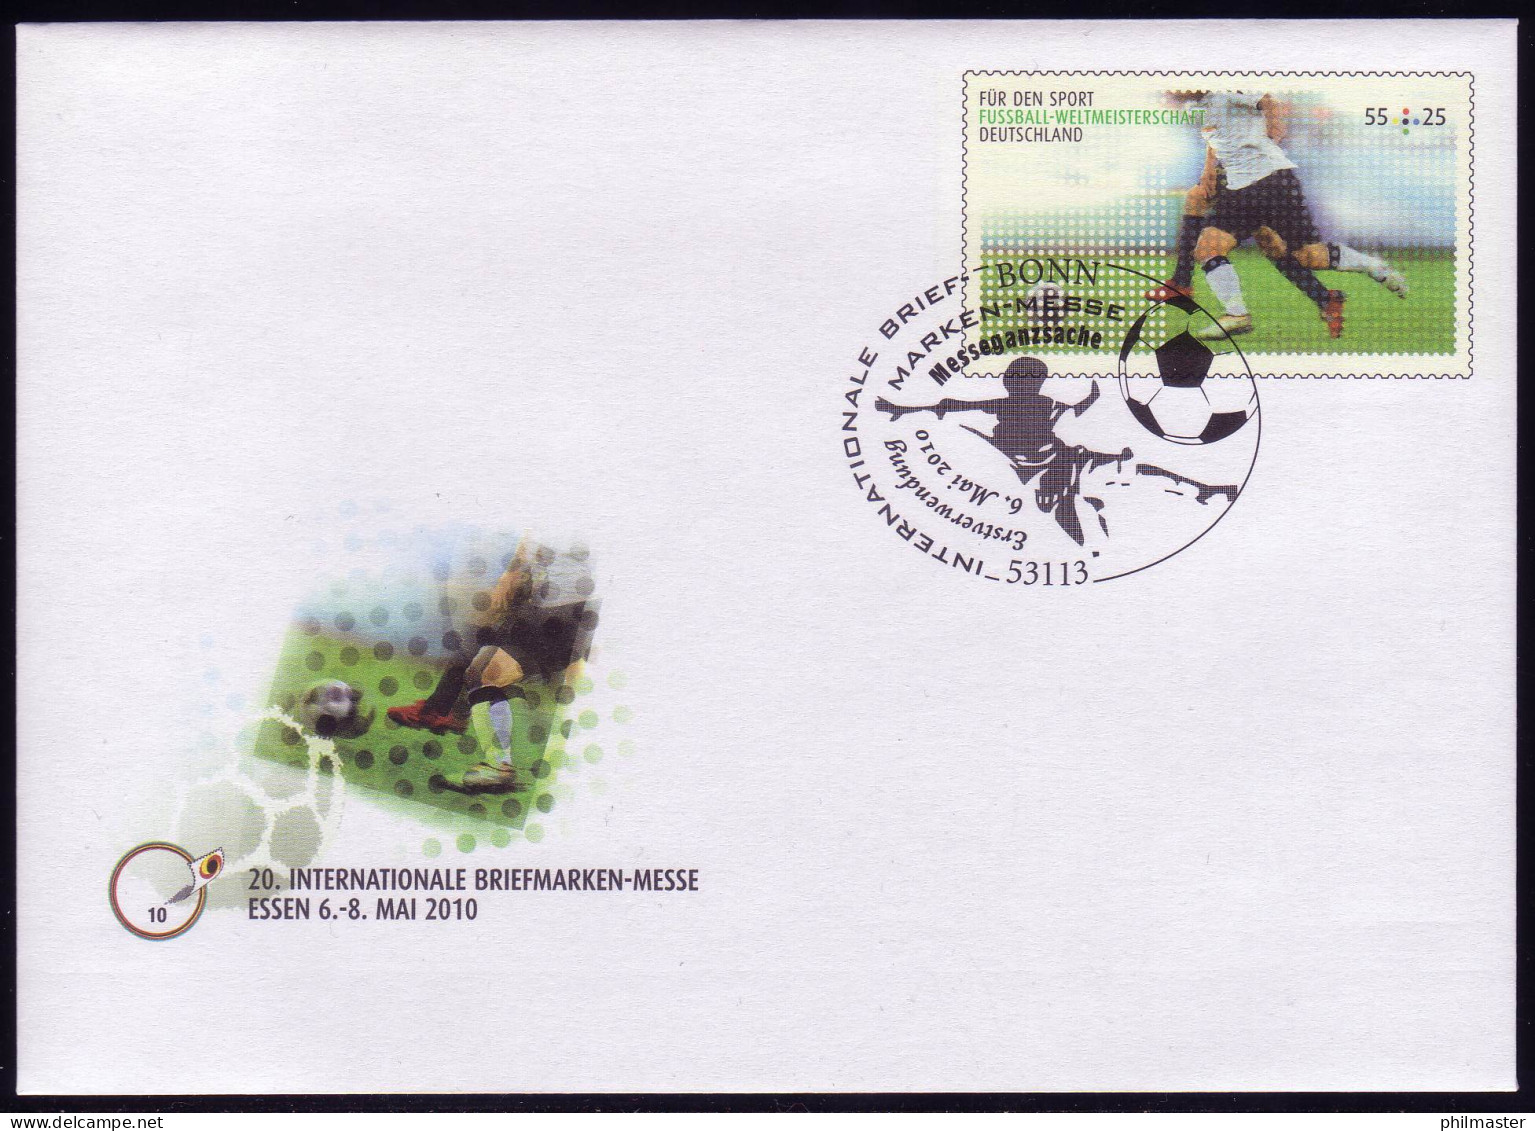 USo 207 Briefmarken-Messe Essen - Fußball-WM 2010, EV-O Bonn 6.5.10 - Briefomslagen - Ongebruikt